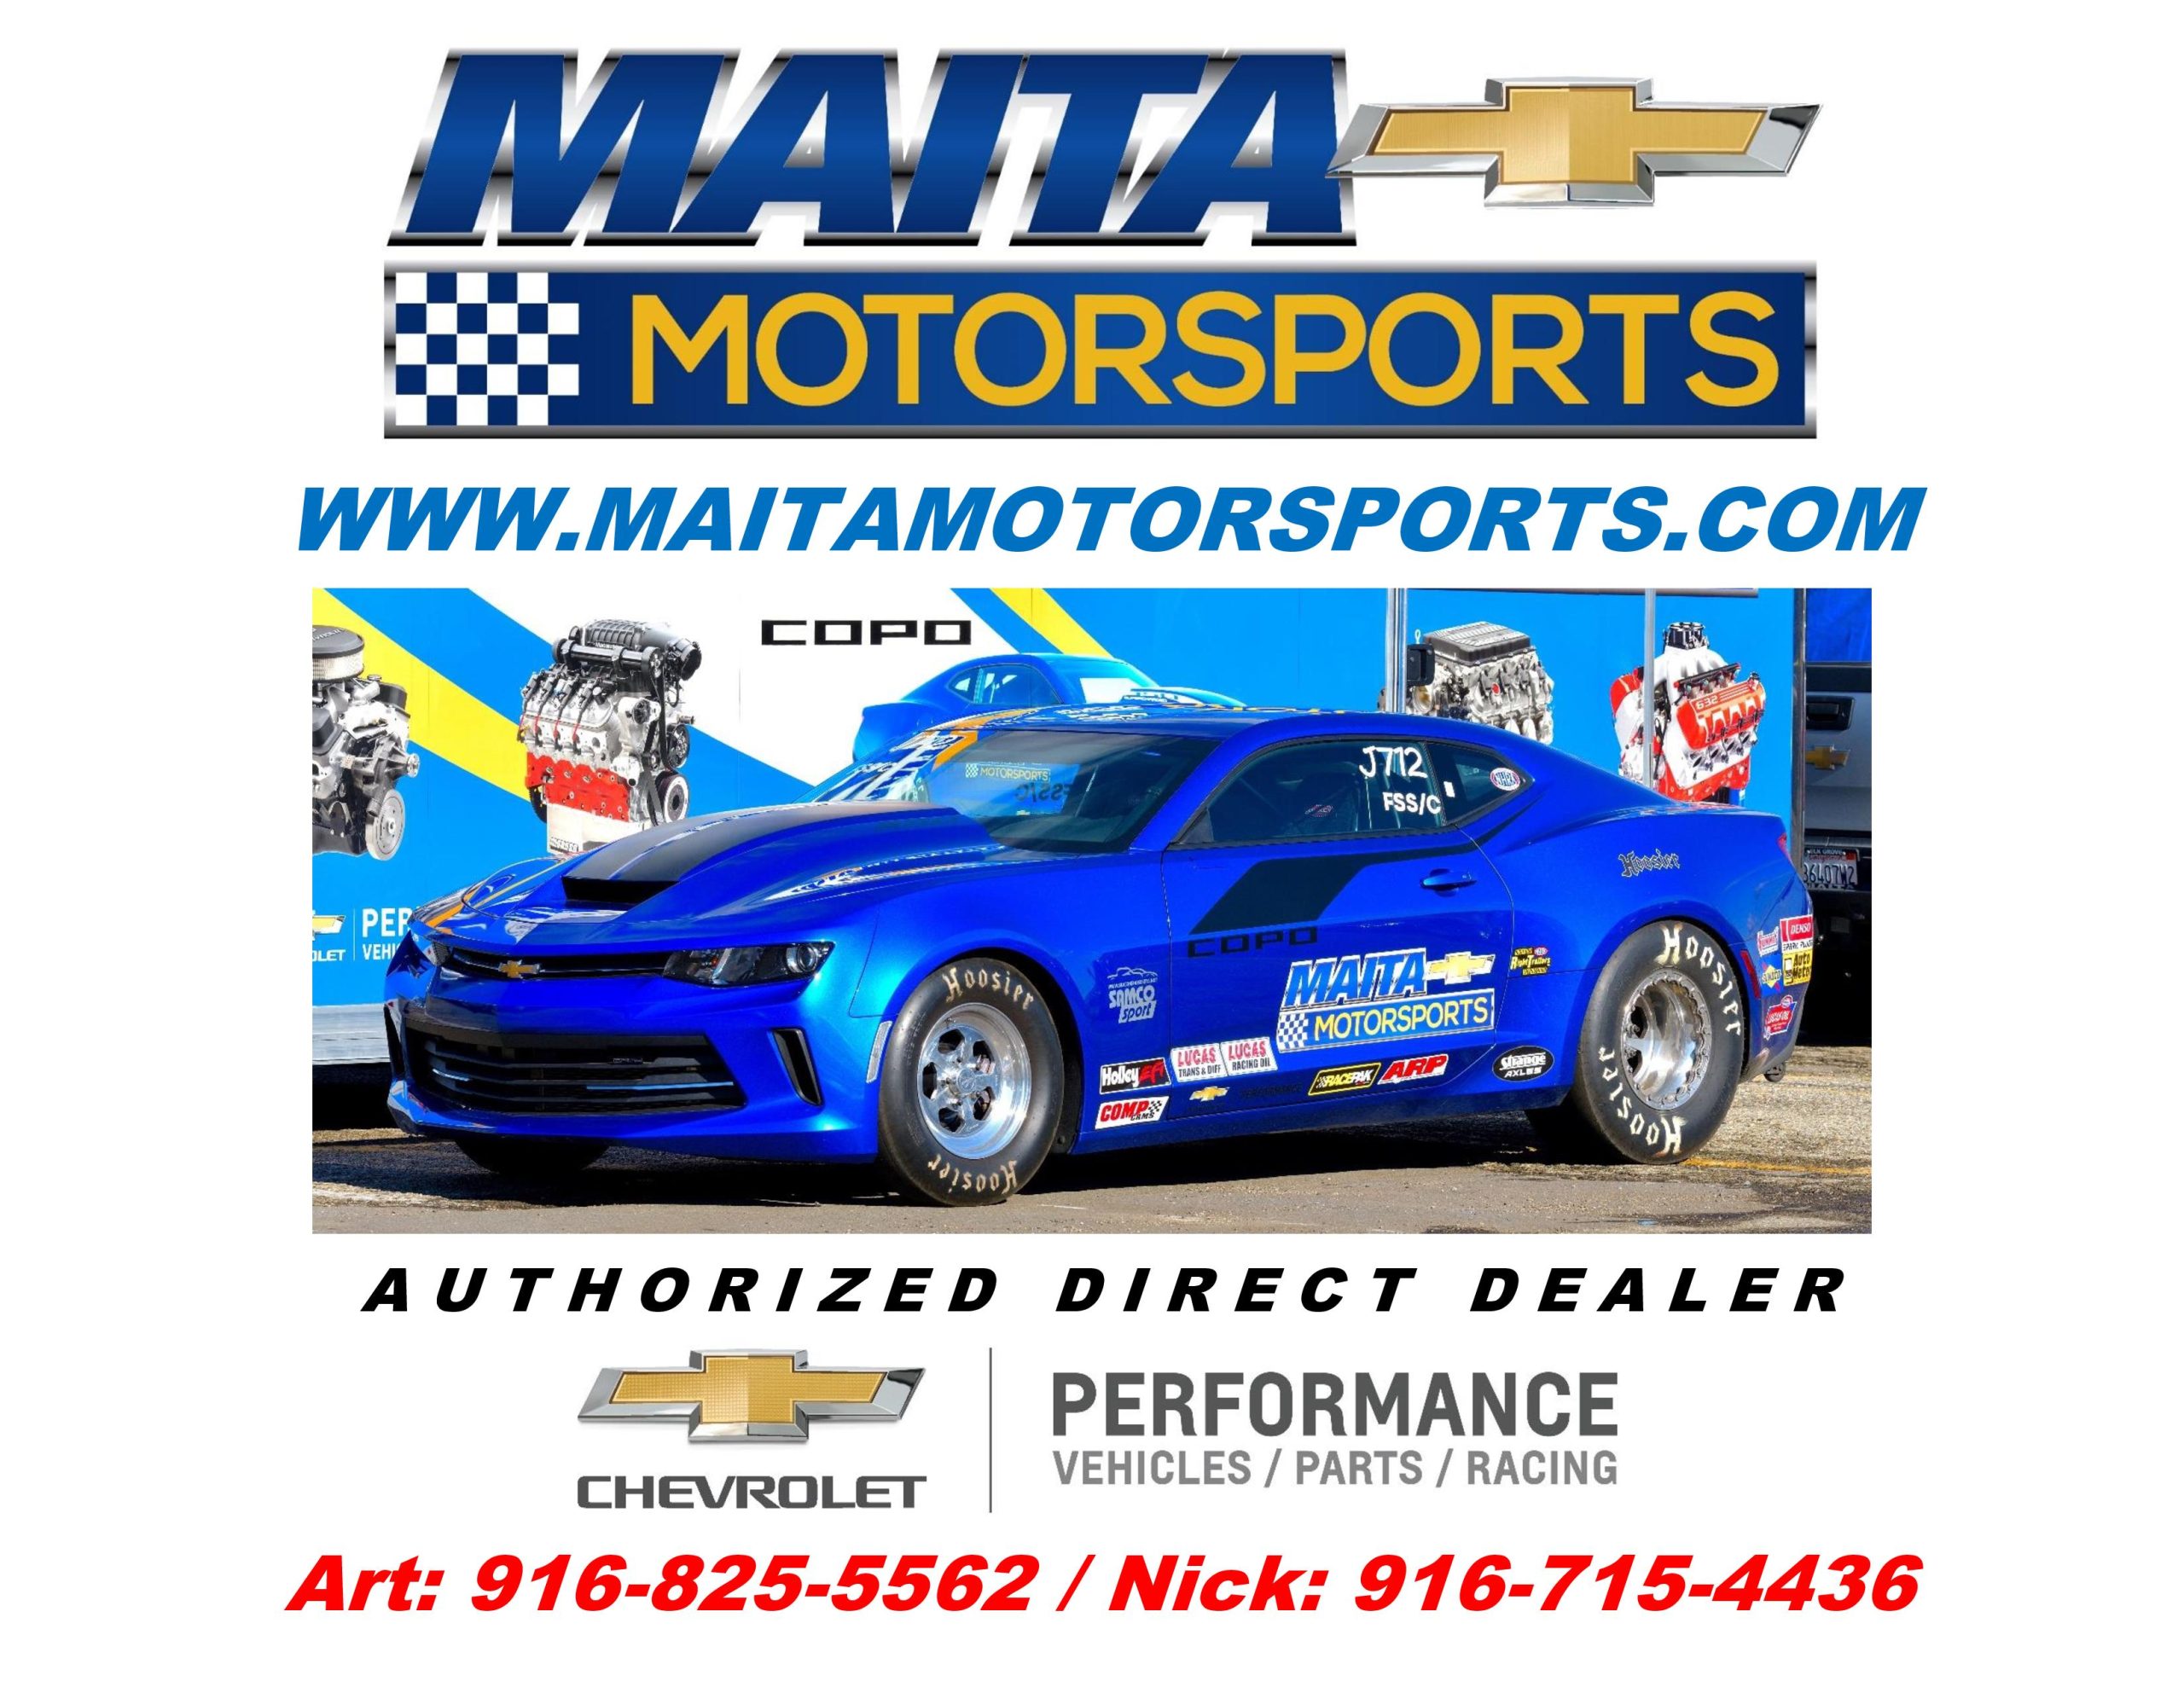 MaitaMotorsports.com